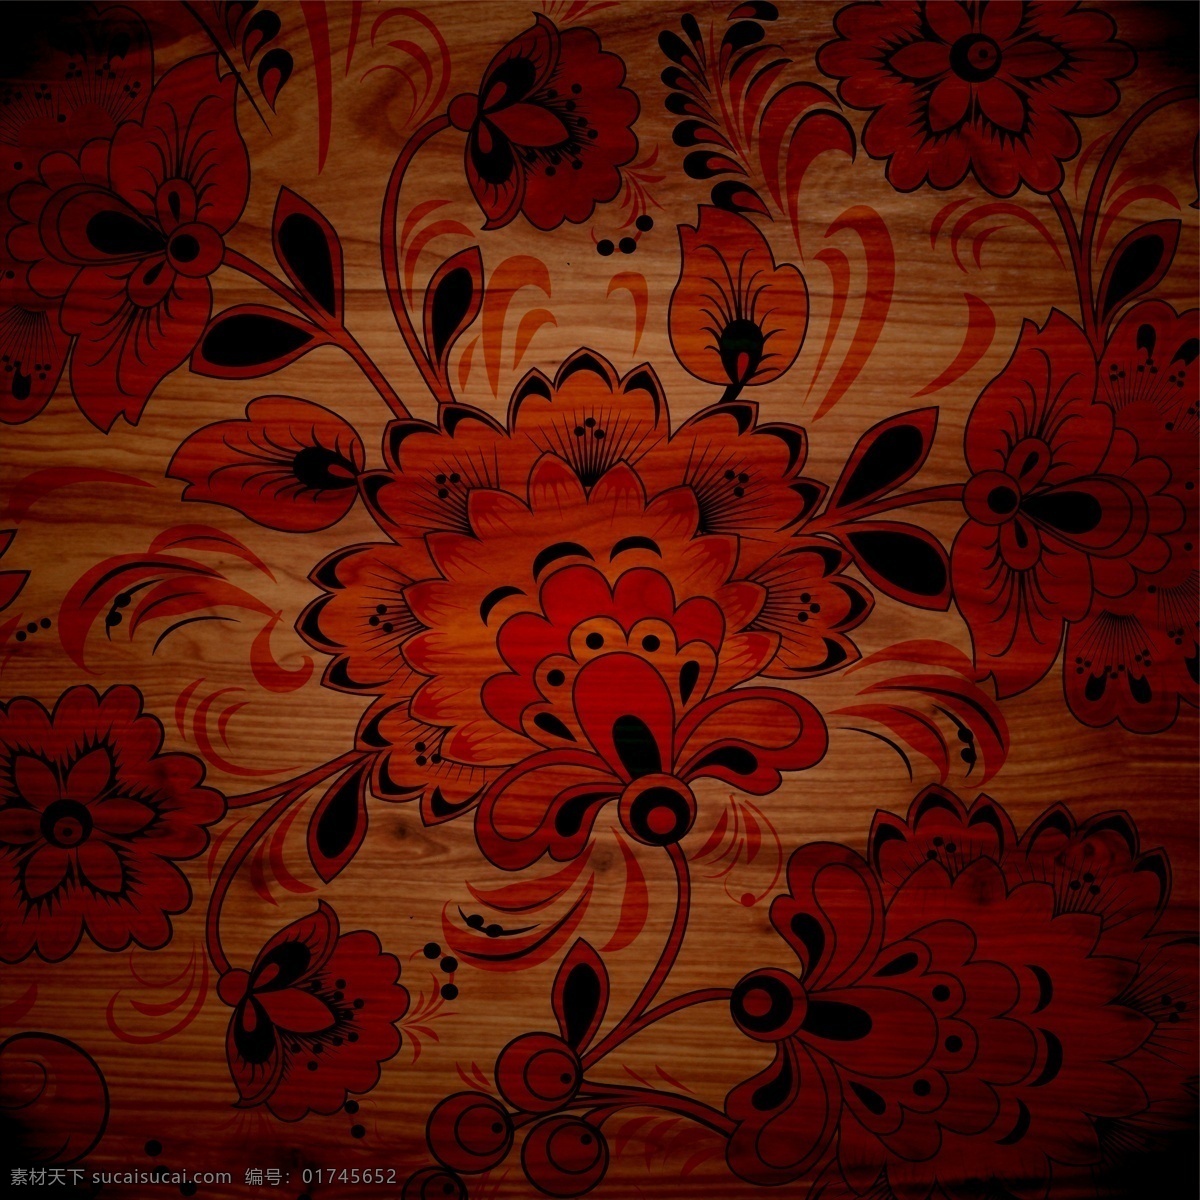 红 黑色 花纹 图案 装饰 木板 高清 大图 木纹 木质 材质 贴图 复古 怀旧 红色